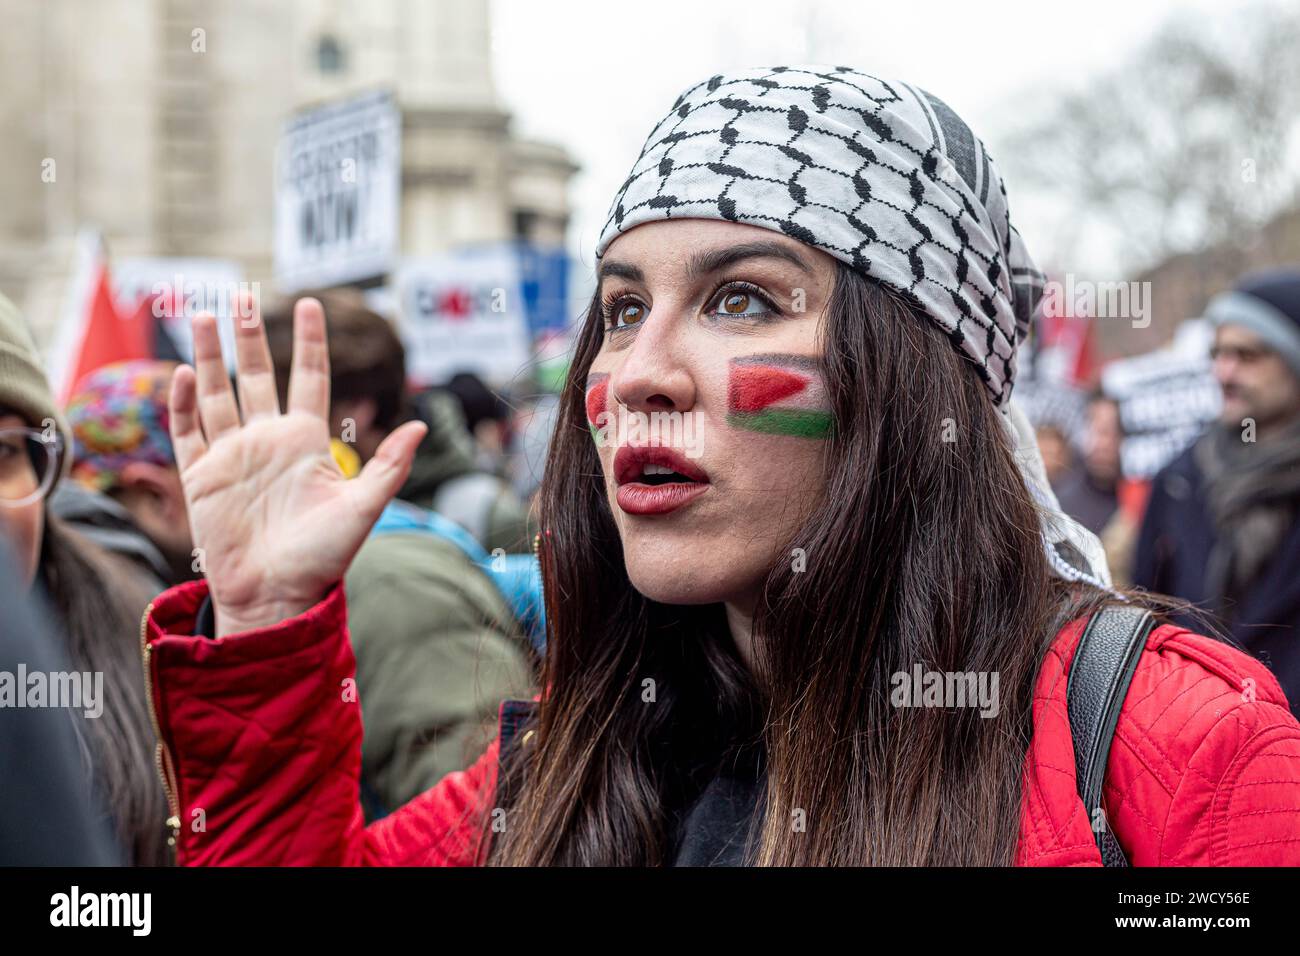 Une journée mondiale de manifestations a attiré des milliers de personnes, dont des enfants, qui ont traversé le centre de Londres pour une marche pro-palestinienne, qui fait partie d’une journée mondiale d’action contre la guerre la plus longue et la plus meurtrière entre Israël et les Palestiniens depuis 75 ans. Les manifestants ont brandi des banderoles, des drapeaux et des pancartes alors qu'ils marchaient le long du remblai près de la Tamise en soutien au peuple palestinien à Gaza. Londres, Royaume-Uni. Banque D'Images